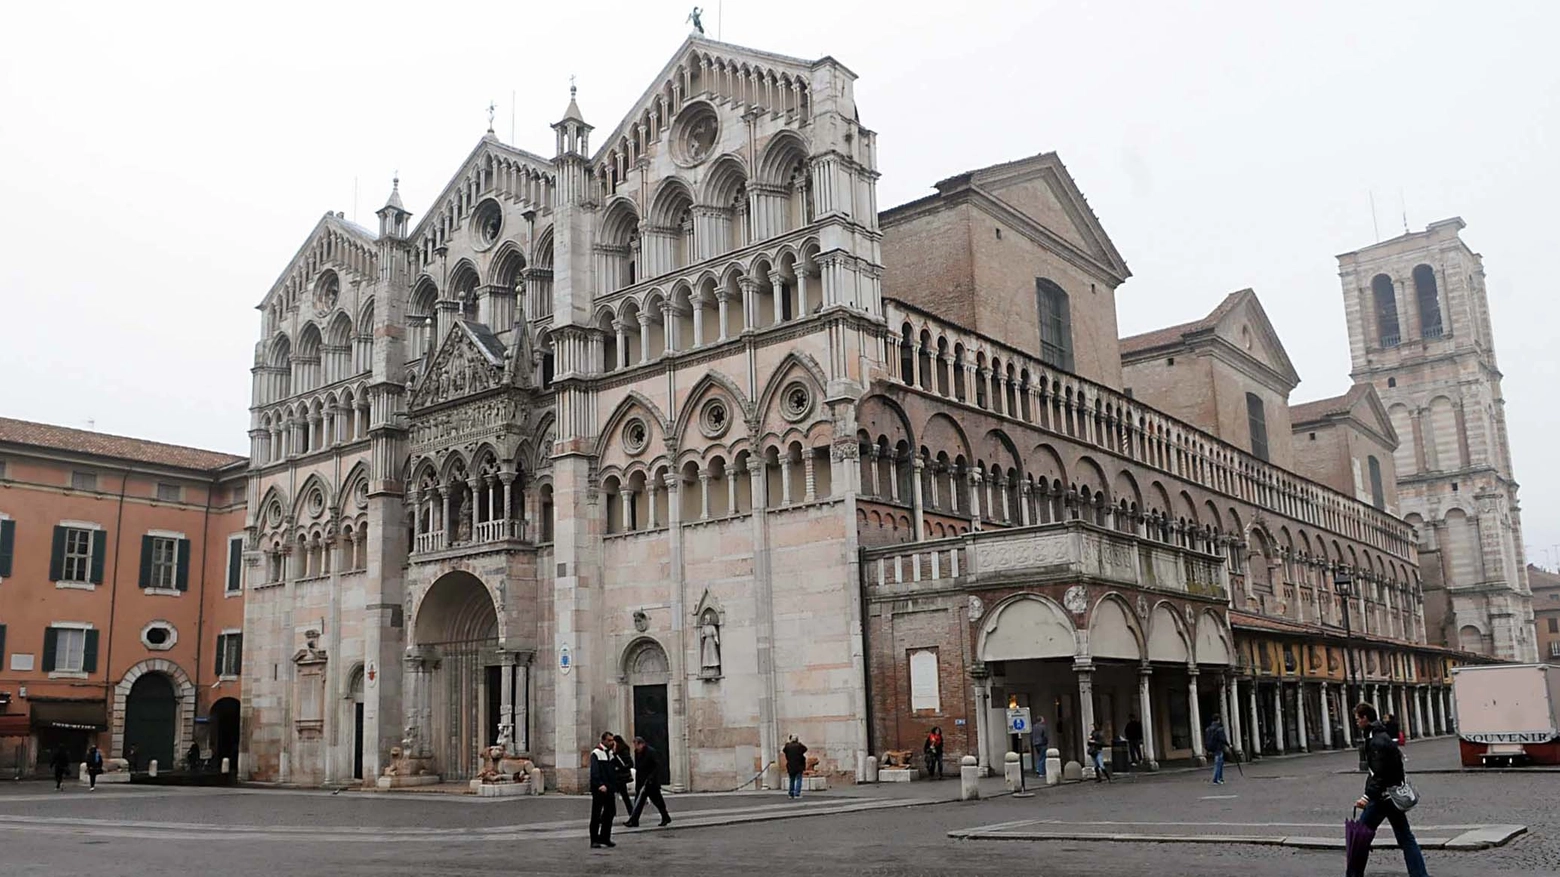 Immagine del duomo di Ferrara prima del terremoto del 2012